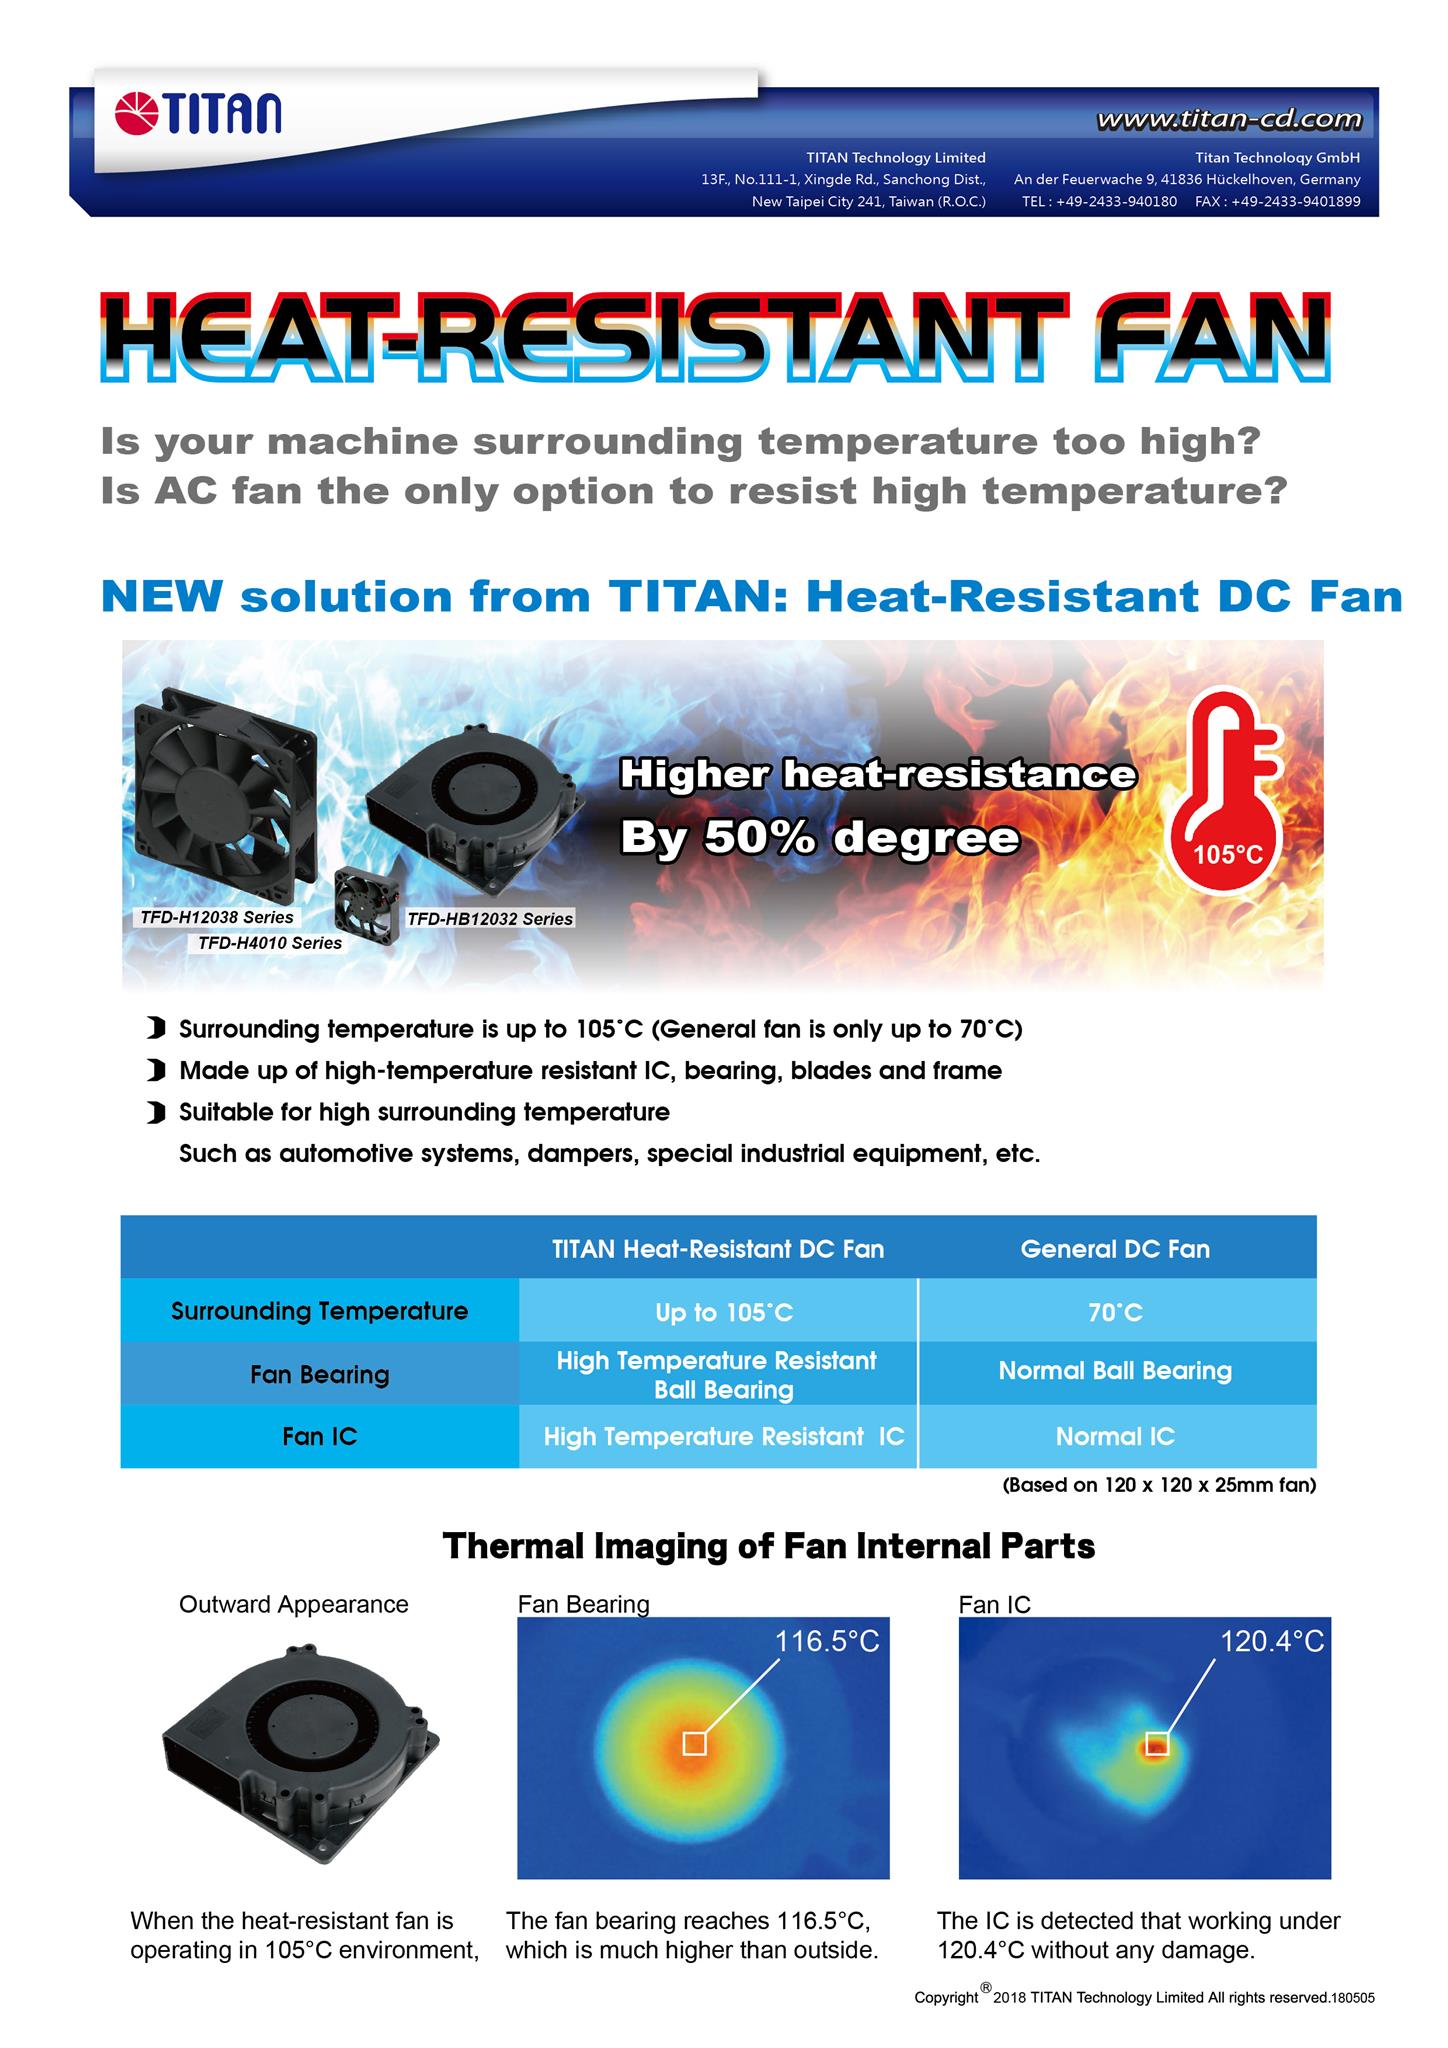 Der TITAN Low-Profile-CPU-Kühler ist nur 23–30 mm hoch. Geeignet für flache Gehäuse oder andere HTPC-Gehäuse /&gt;&lt;/p&gt;&lt;/body&gt;